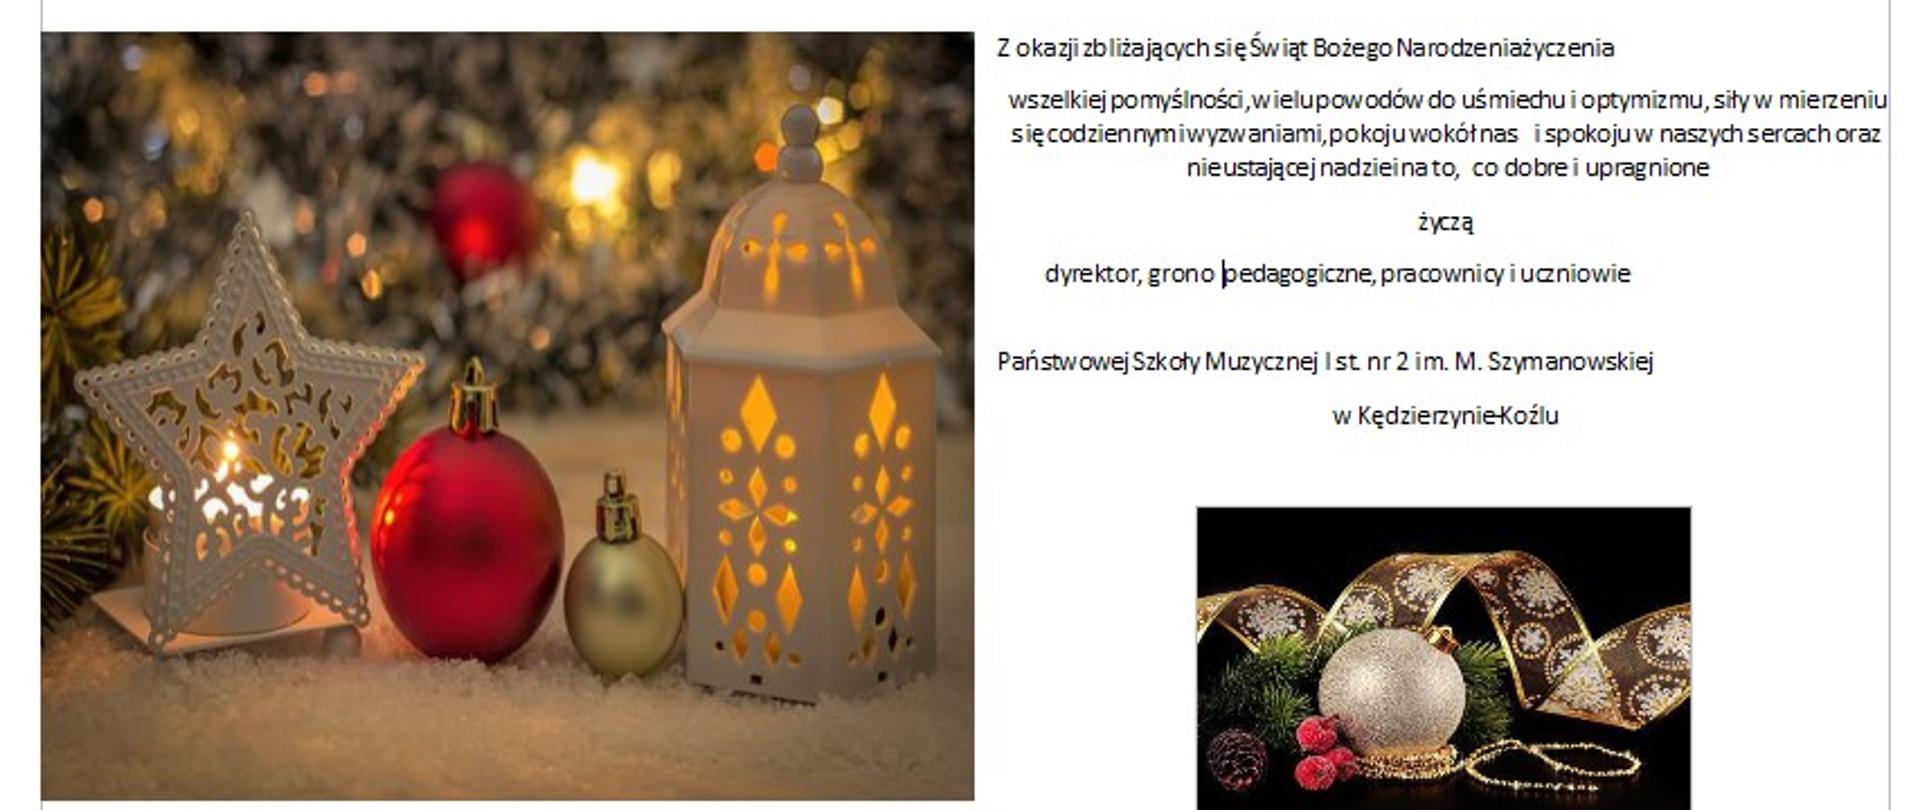 Plakat z życzeniami na Boże Narodzenie, po lewej stronie zdjęcie 2 bombek z 2 lampionami, po prawej zdjęcie bombki, wstążki i gałązki świerkowej